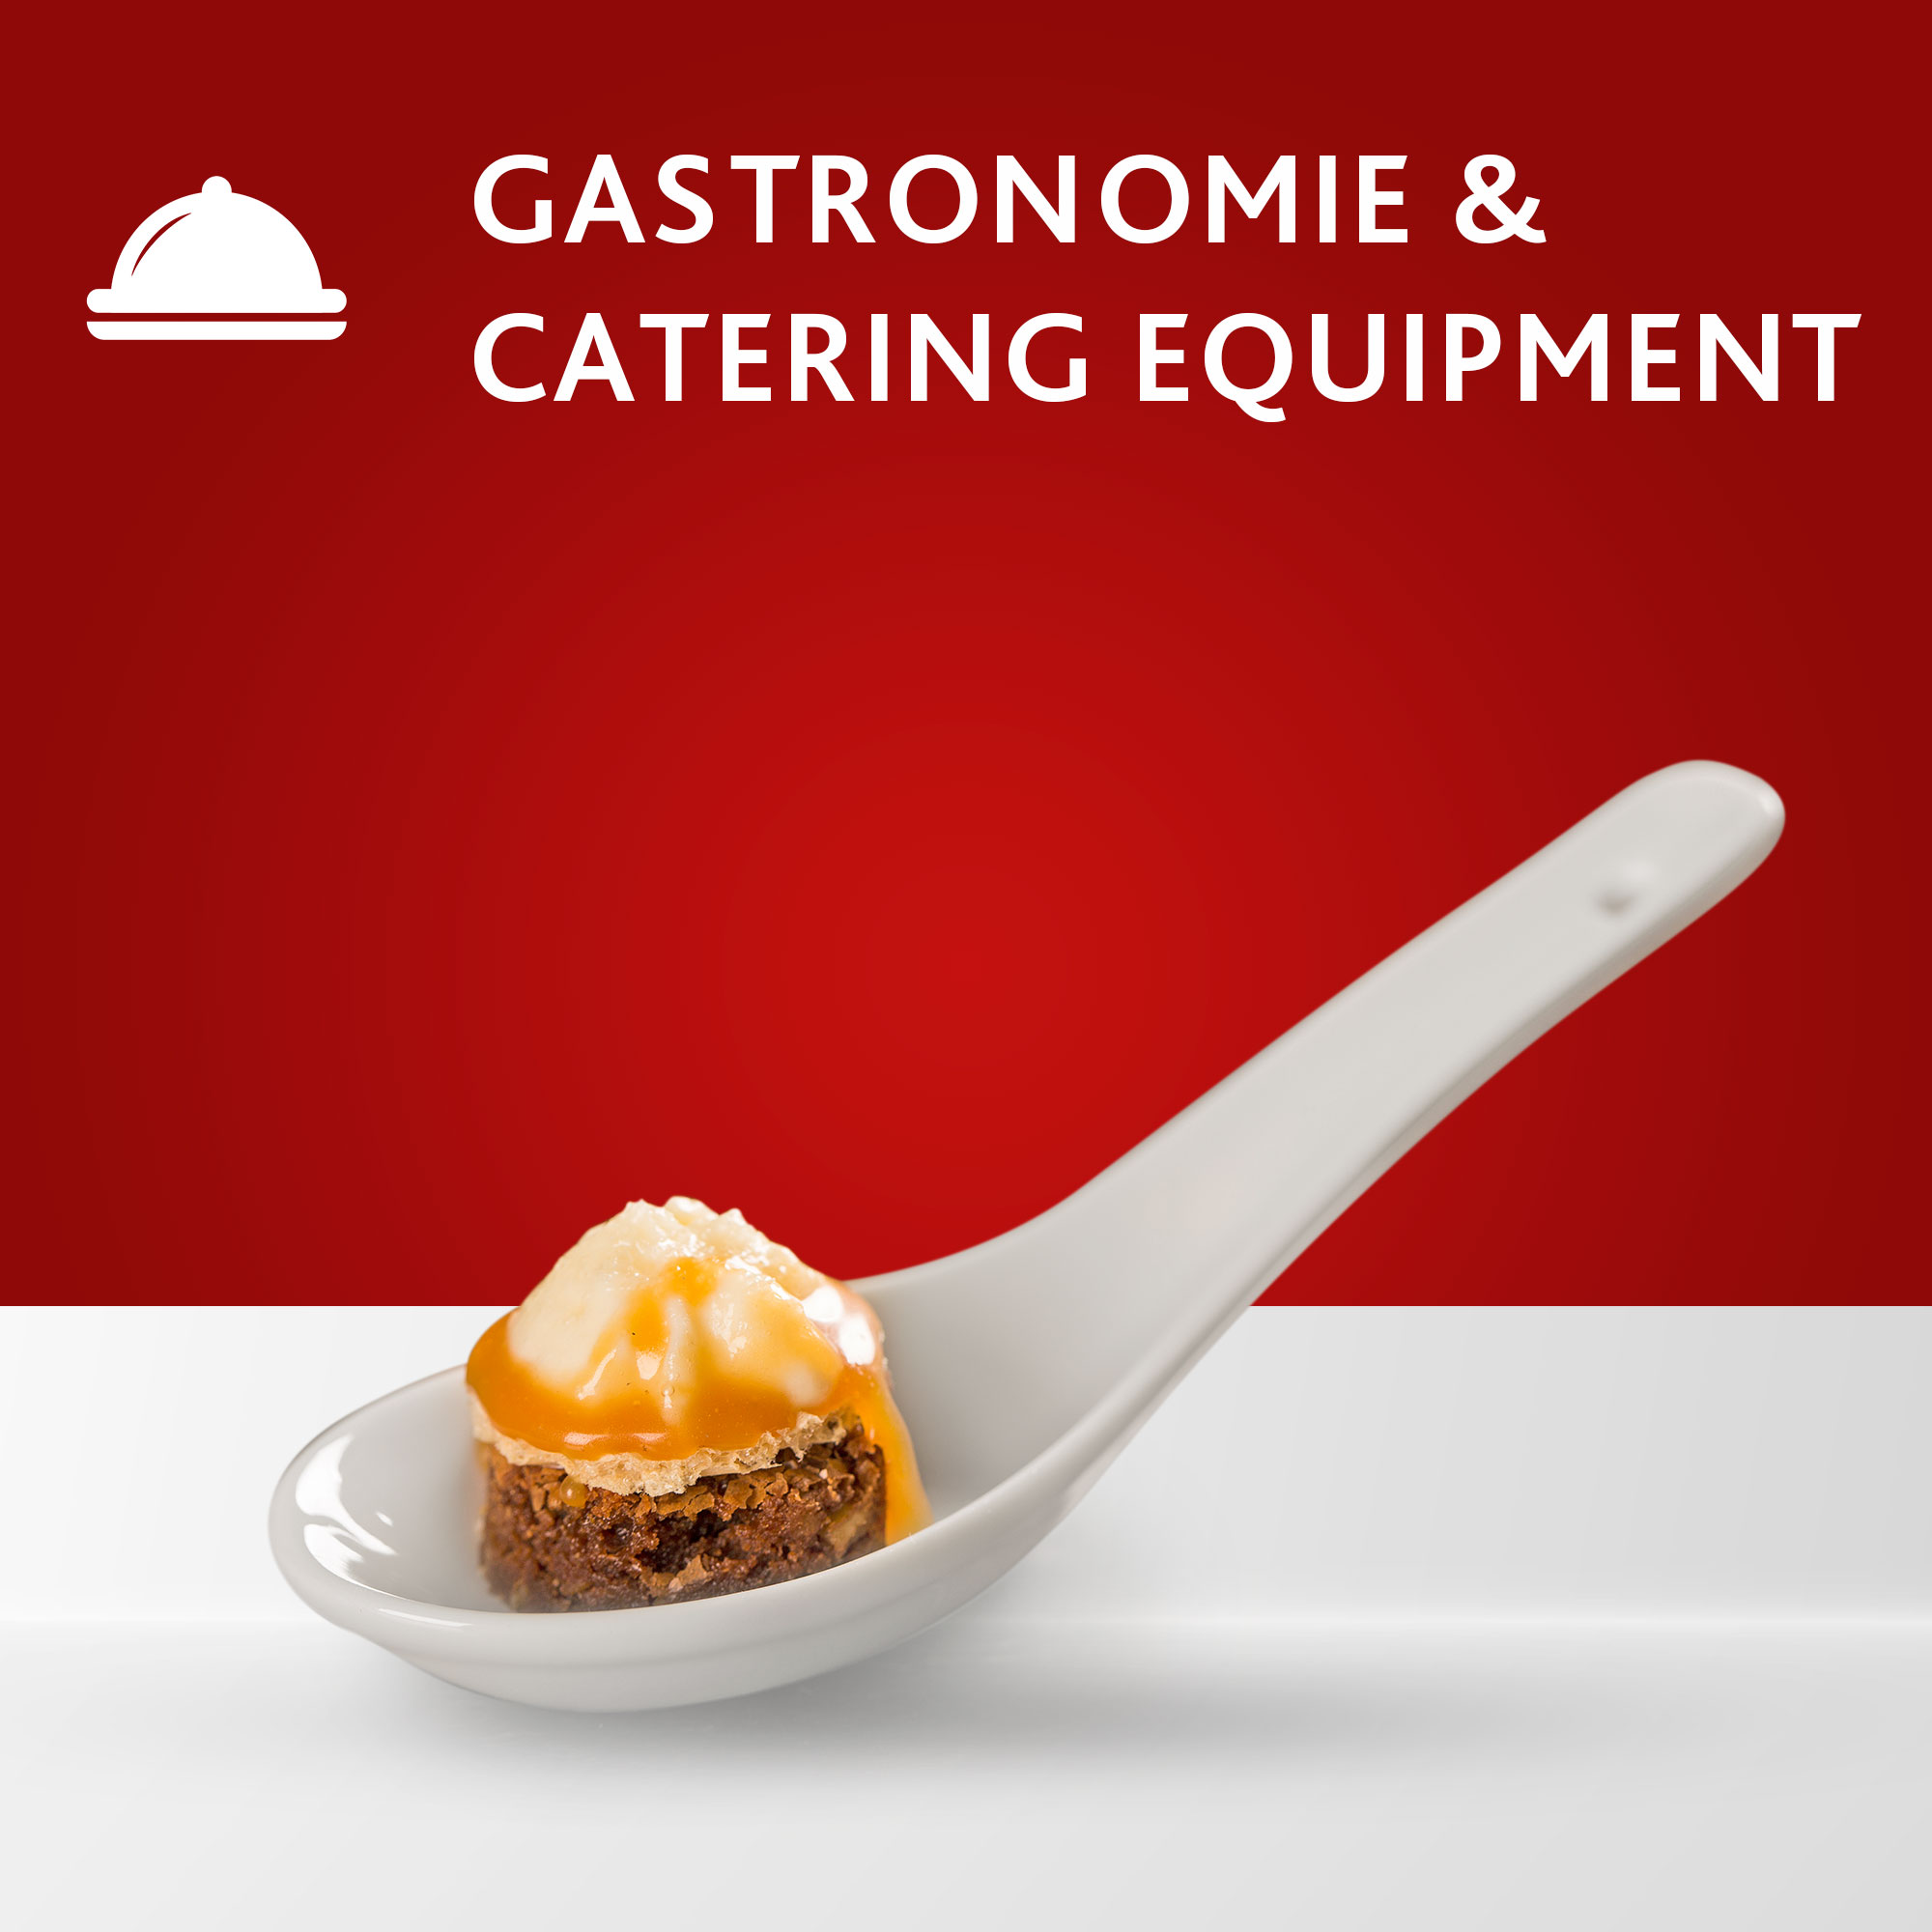 Gastronomie und Catering Equipment online kaufen